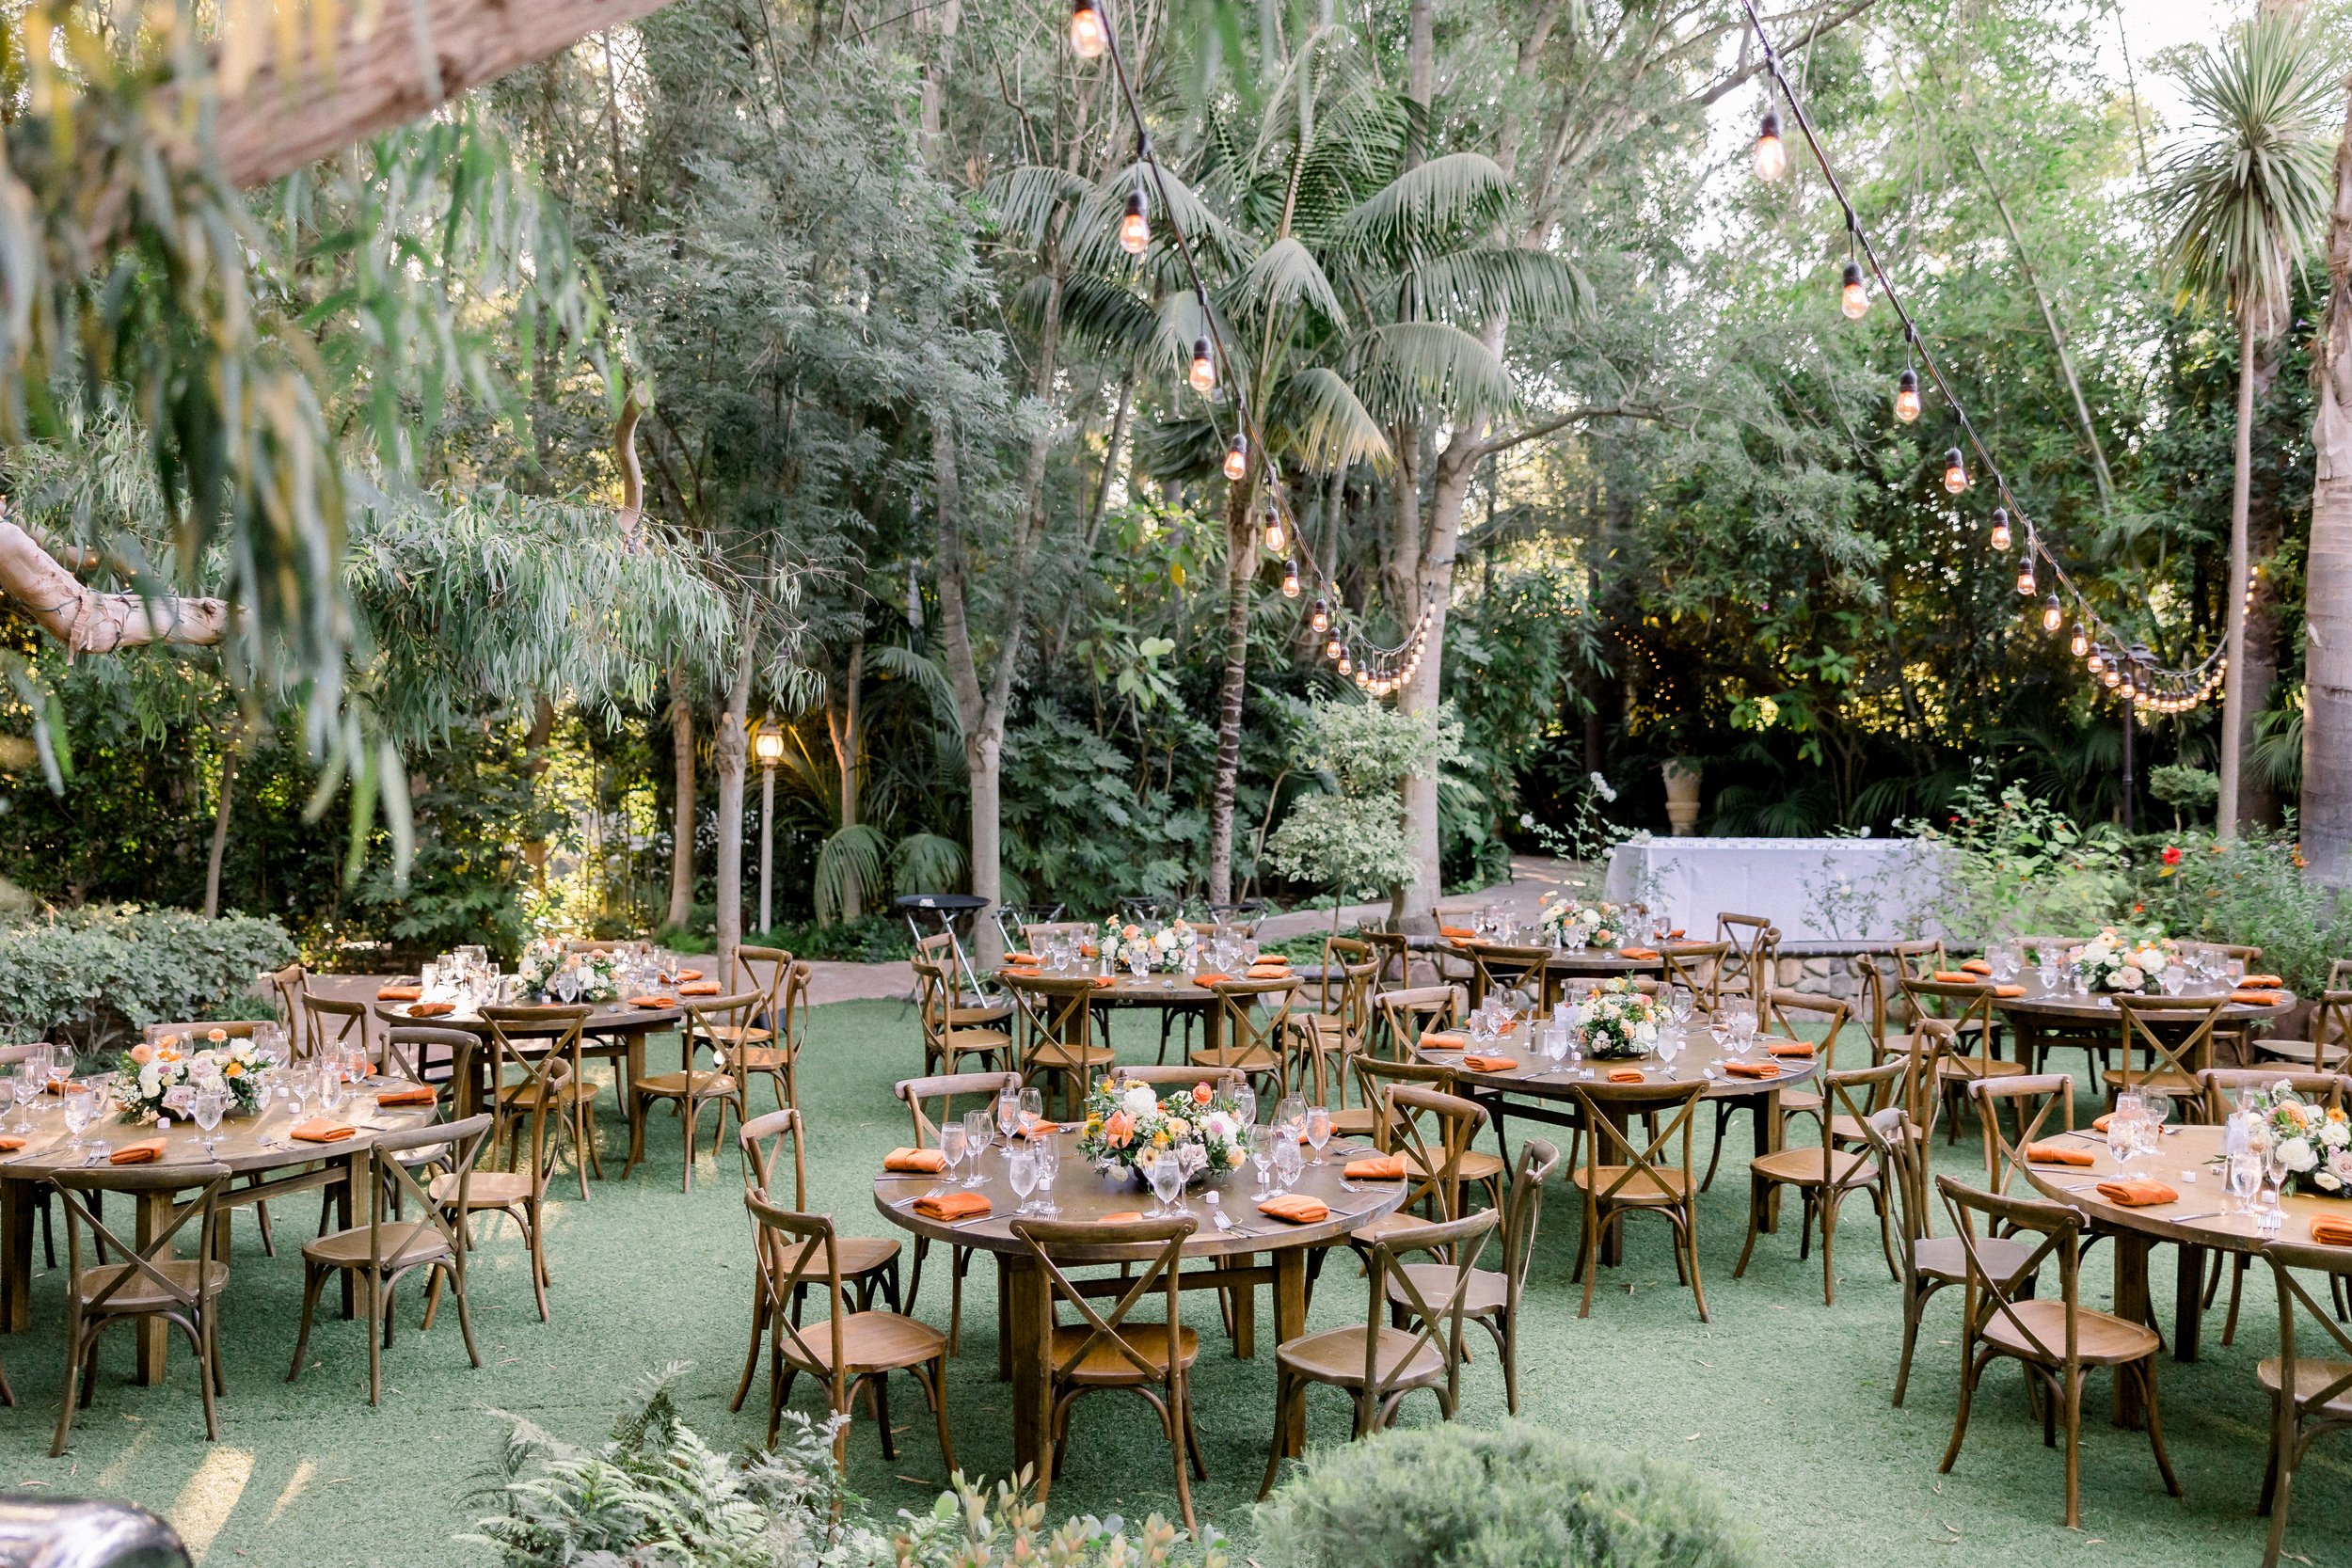 LA couple plans wedding at simi valley venue, hartley botanica